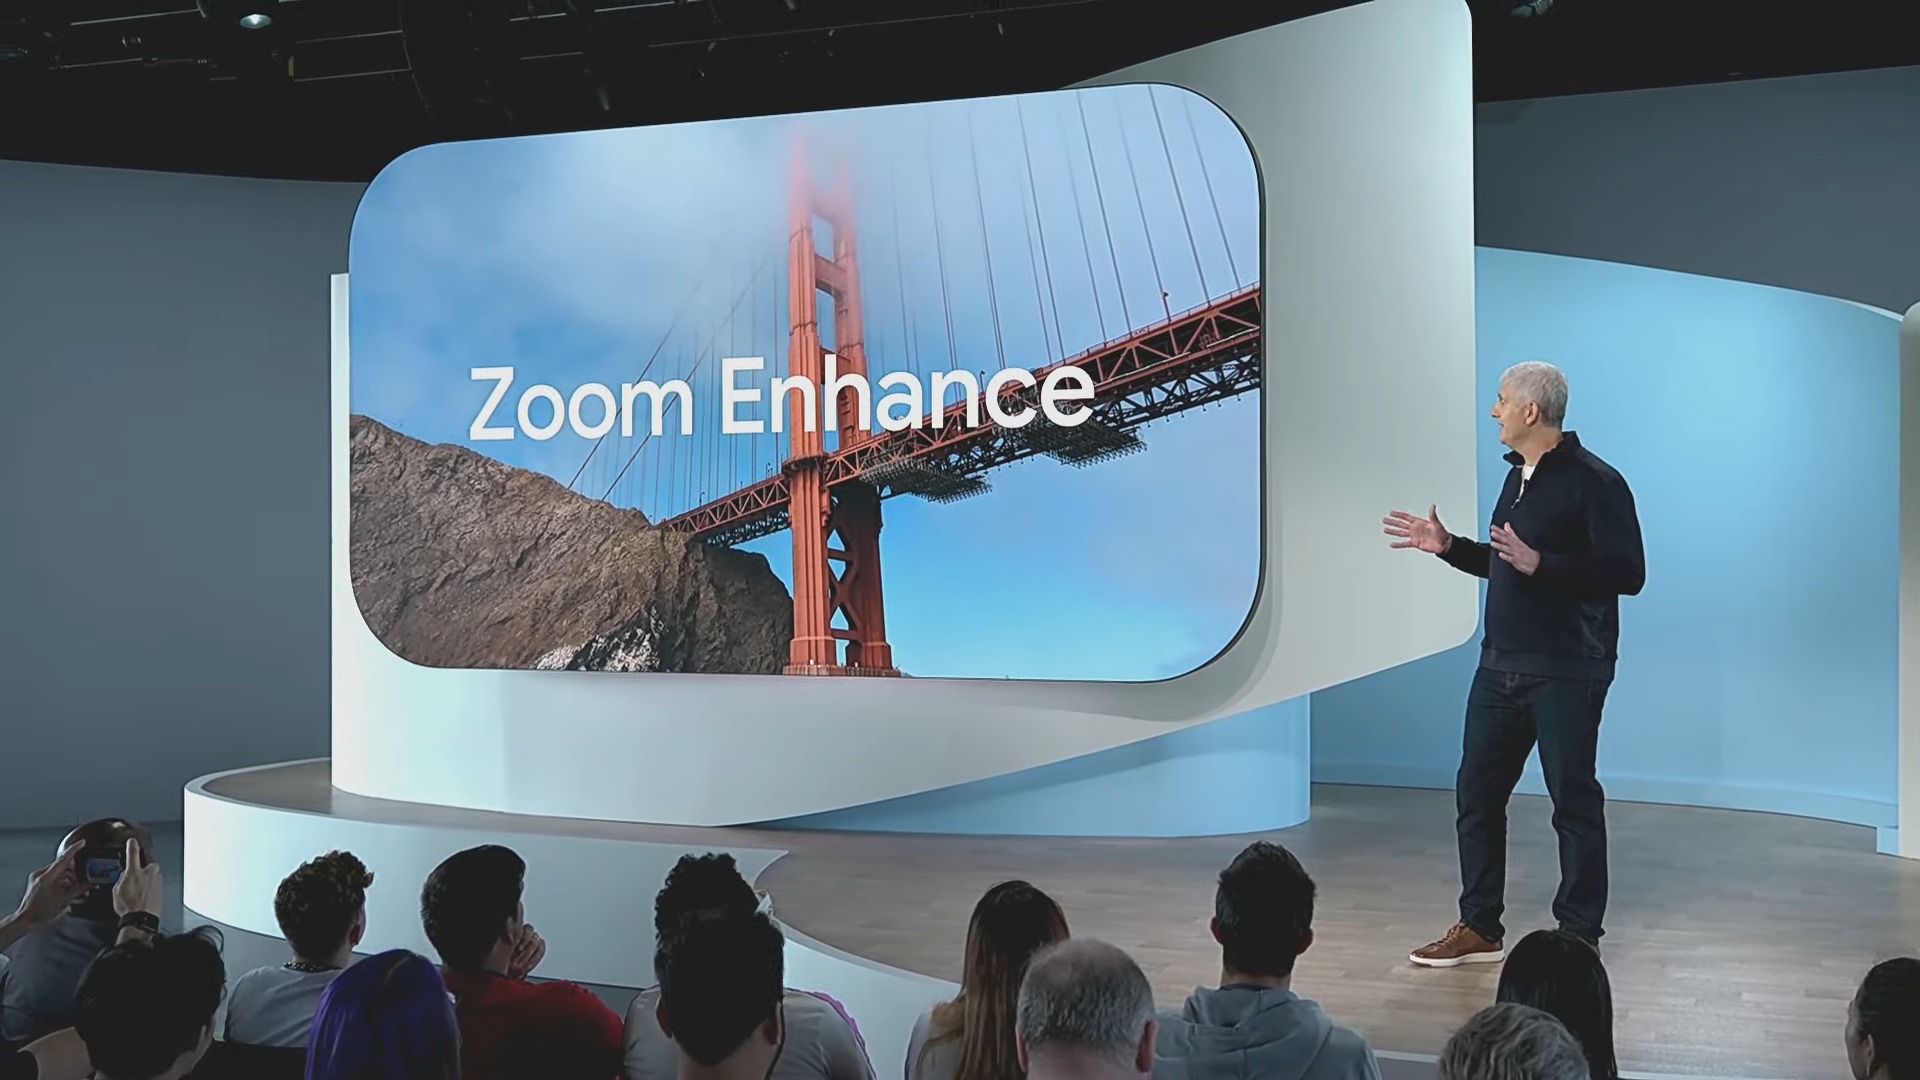 ¿Dónde está la función Zoom Enhance prometida del Pixel 8 Pro?